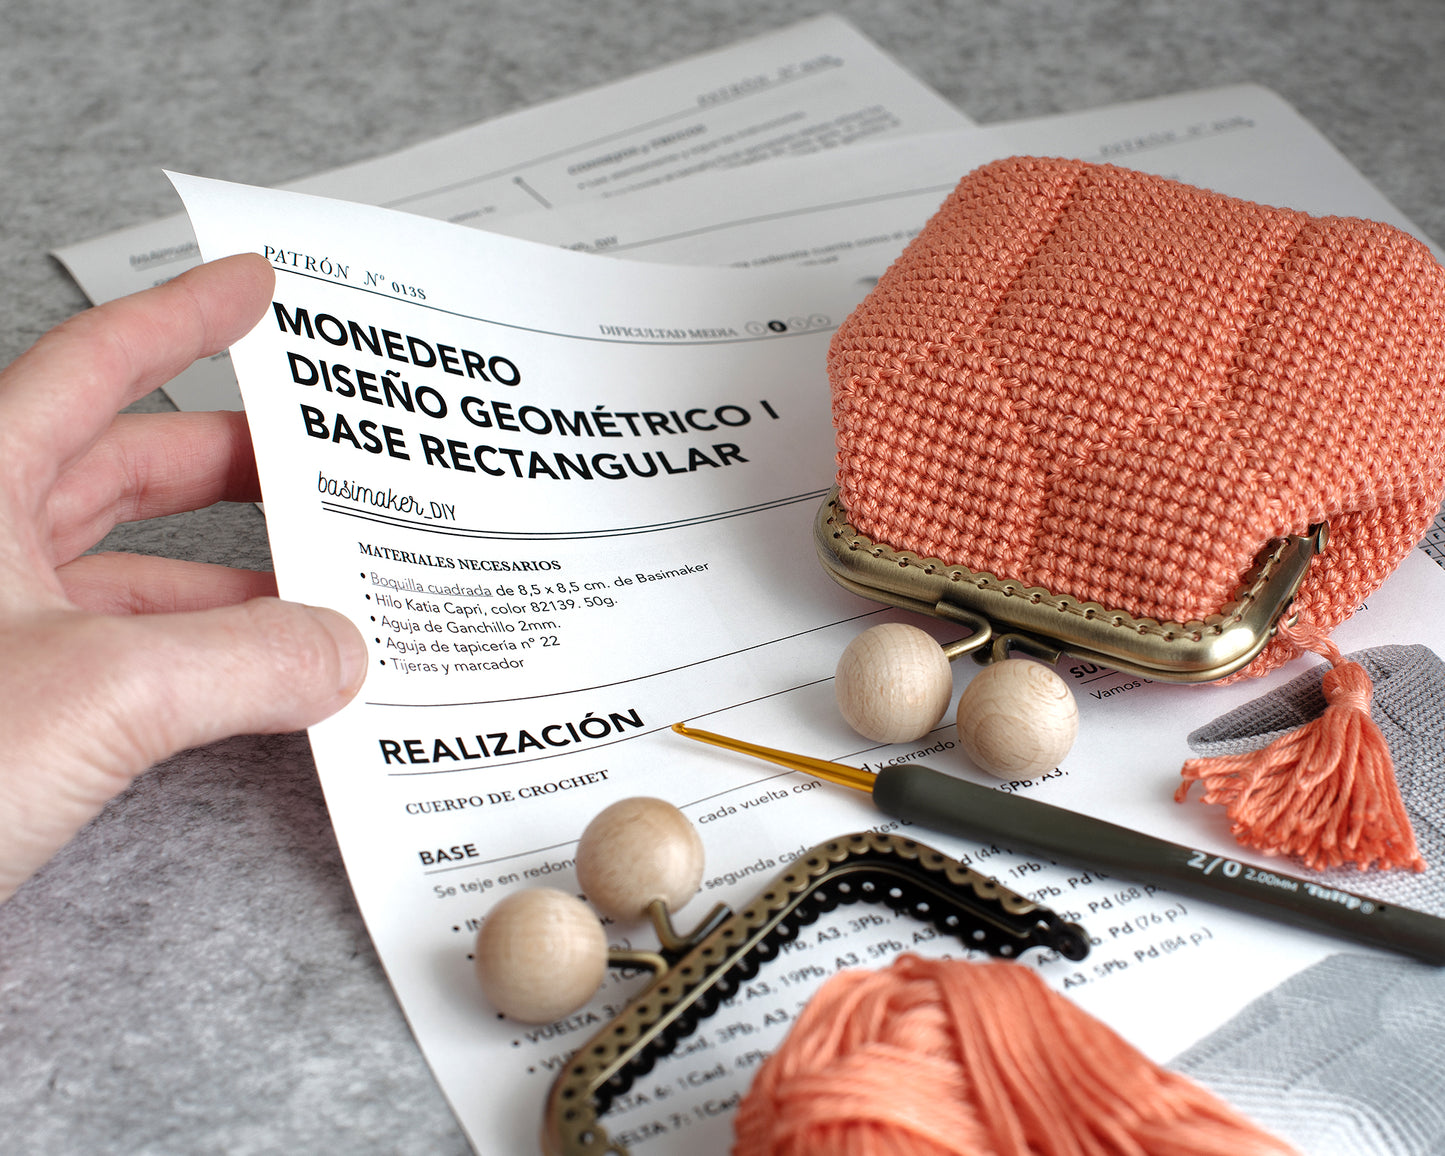 Patrón monedero de crochet diseño GEOMETRICO I. Base rectangular, para boquilla 8.5cm.